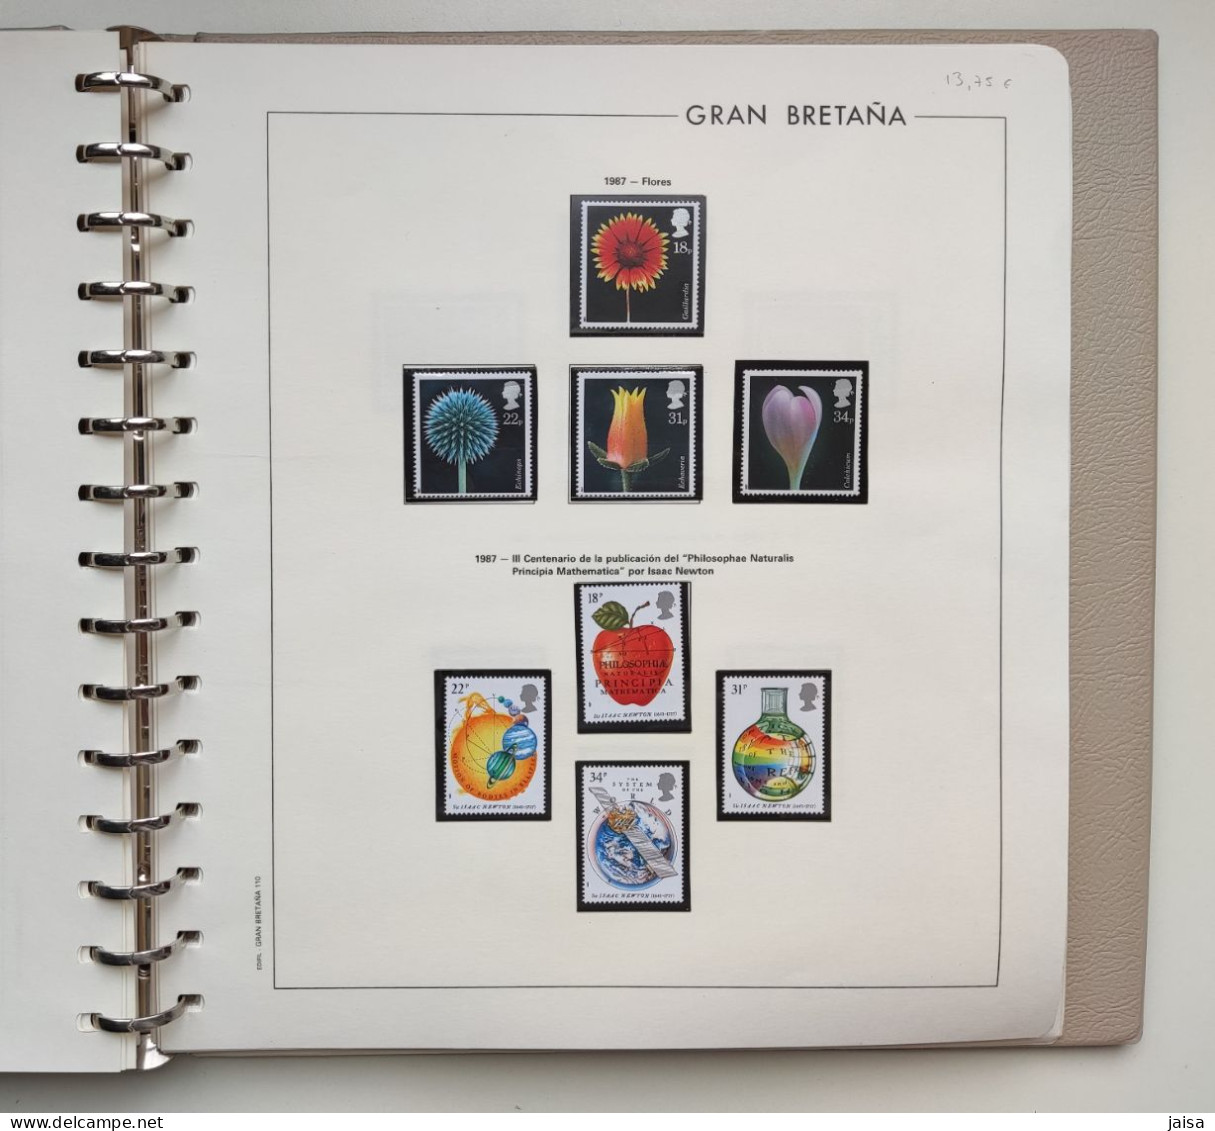 GRAN BRETAÑA. Años 1976 - 1989. Album, hojas-suplementos y sellos.